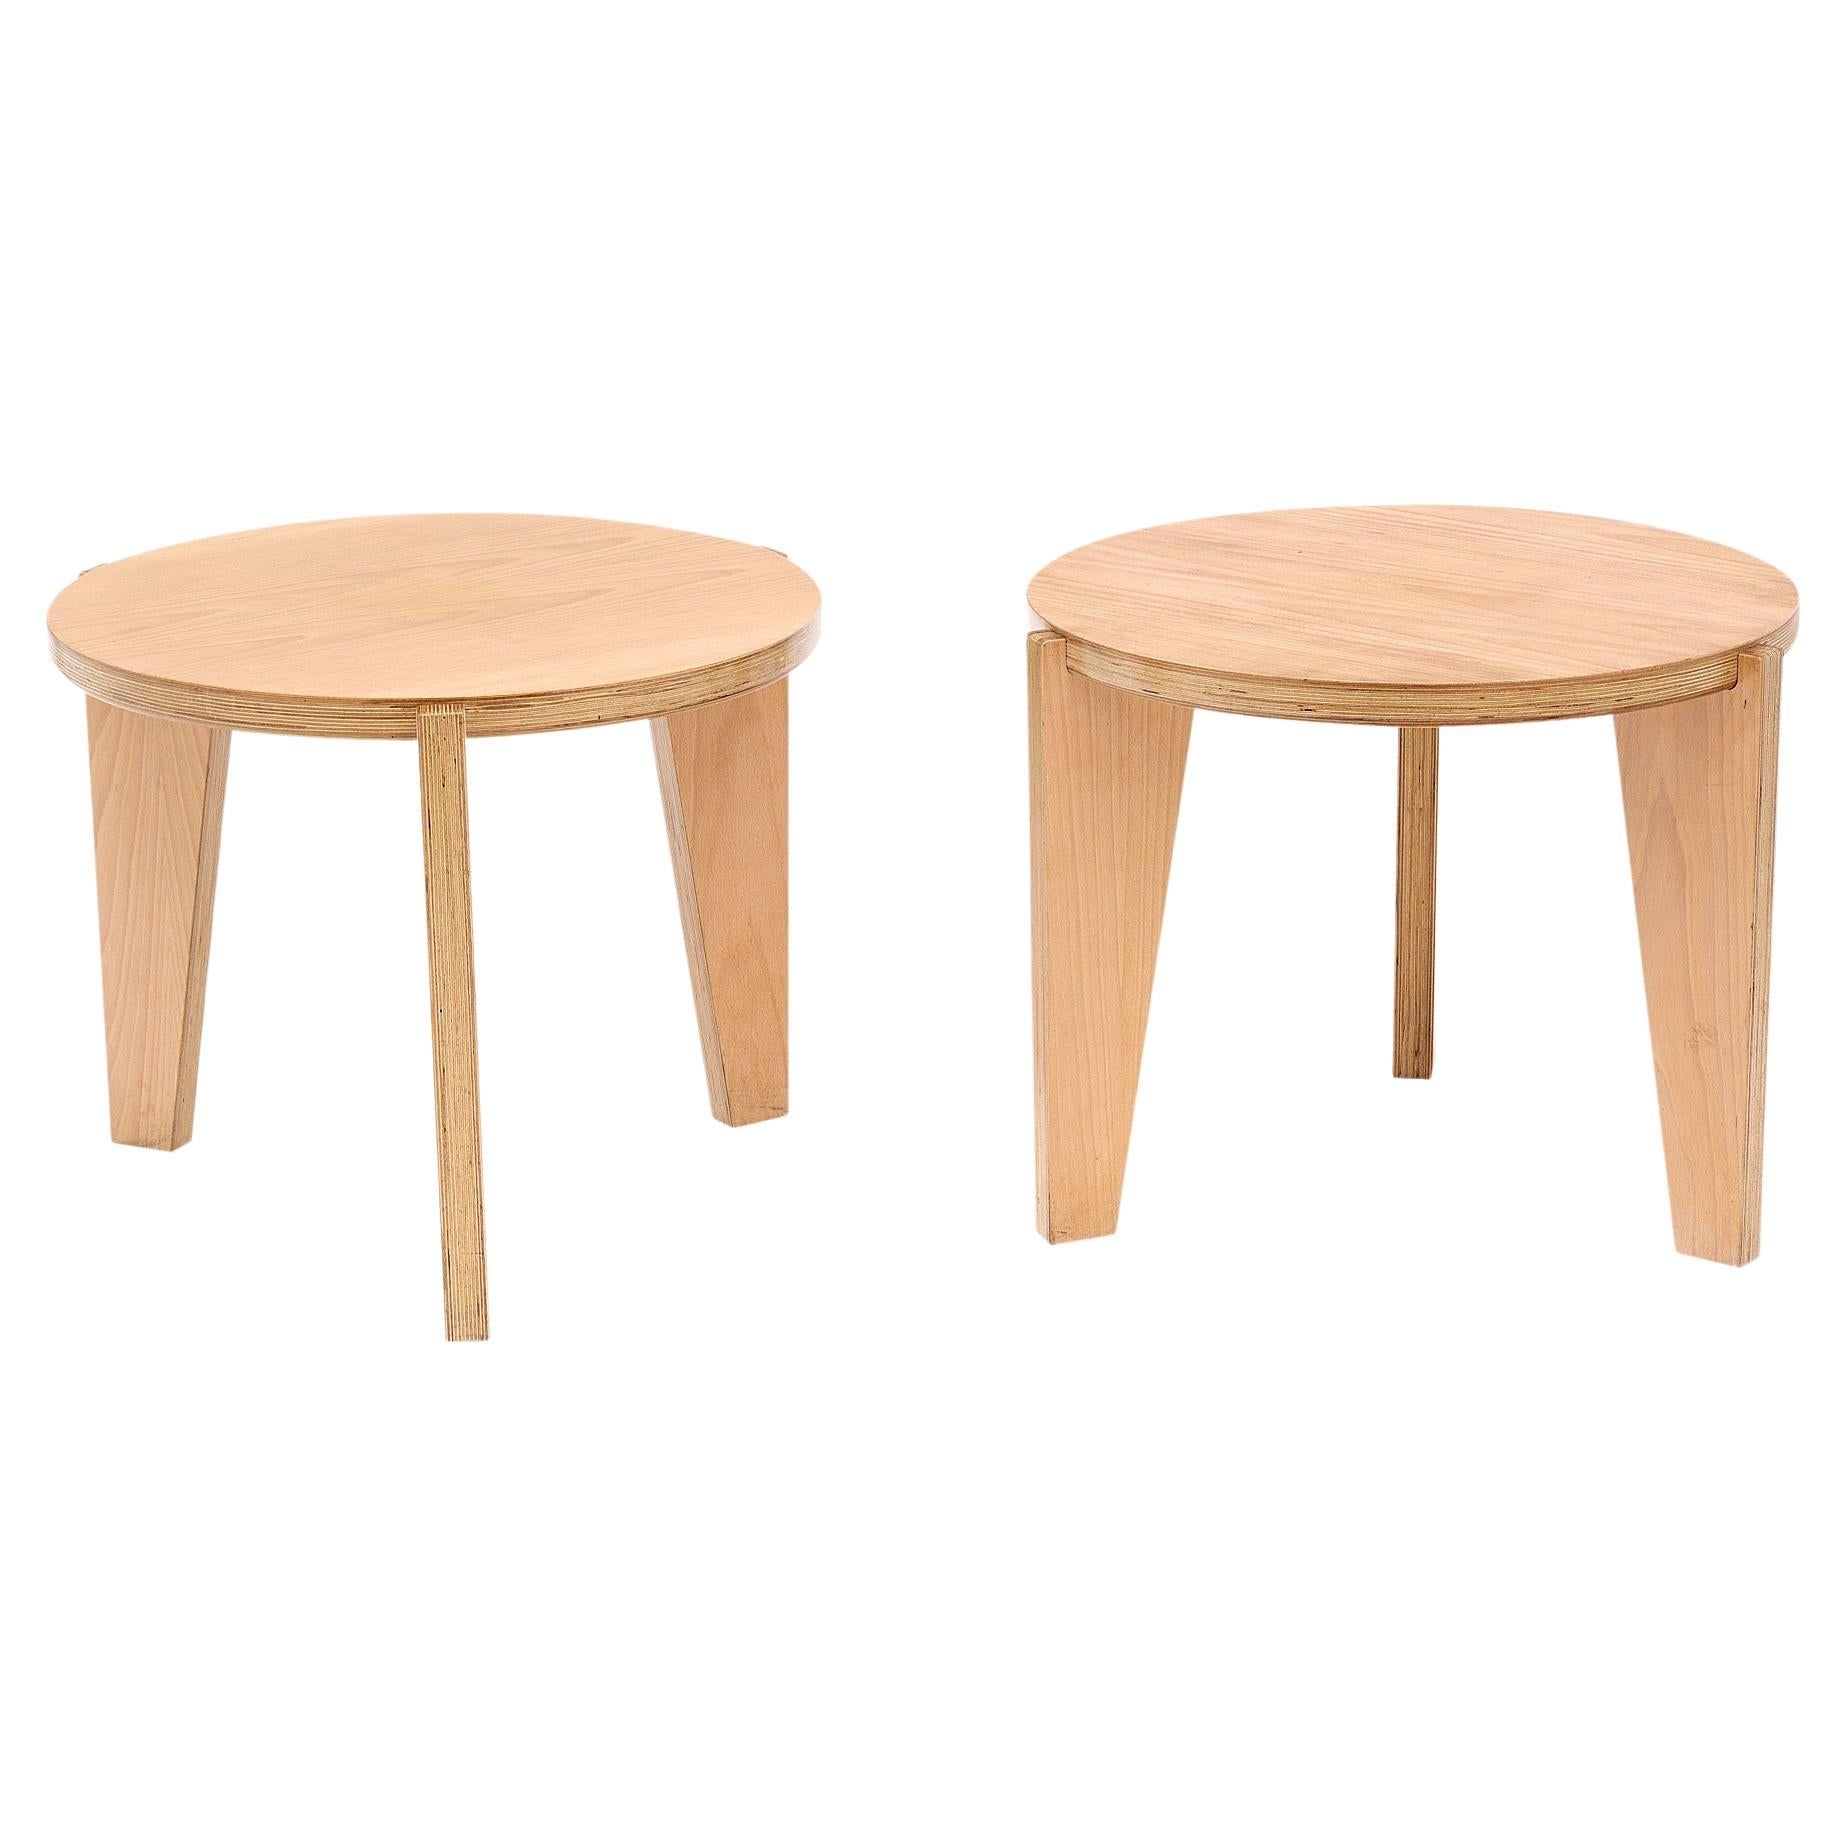 Wood Modernist Side Tables For Sale